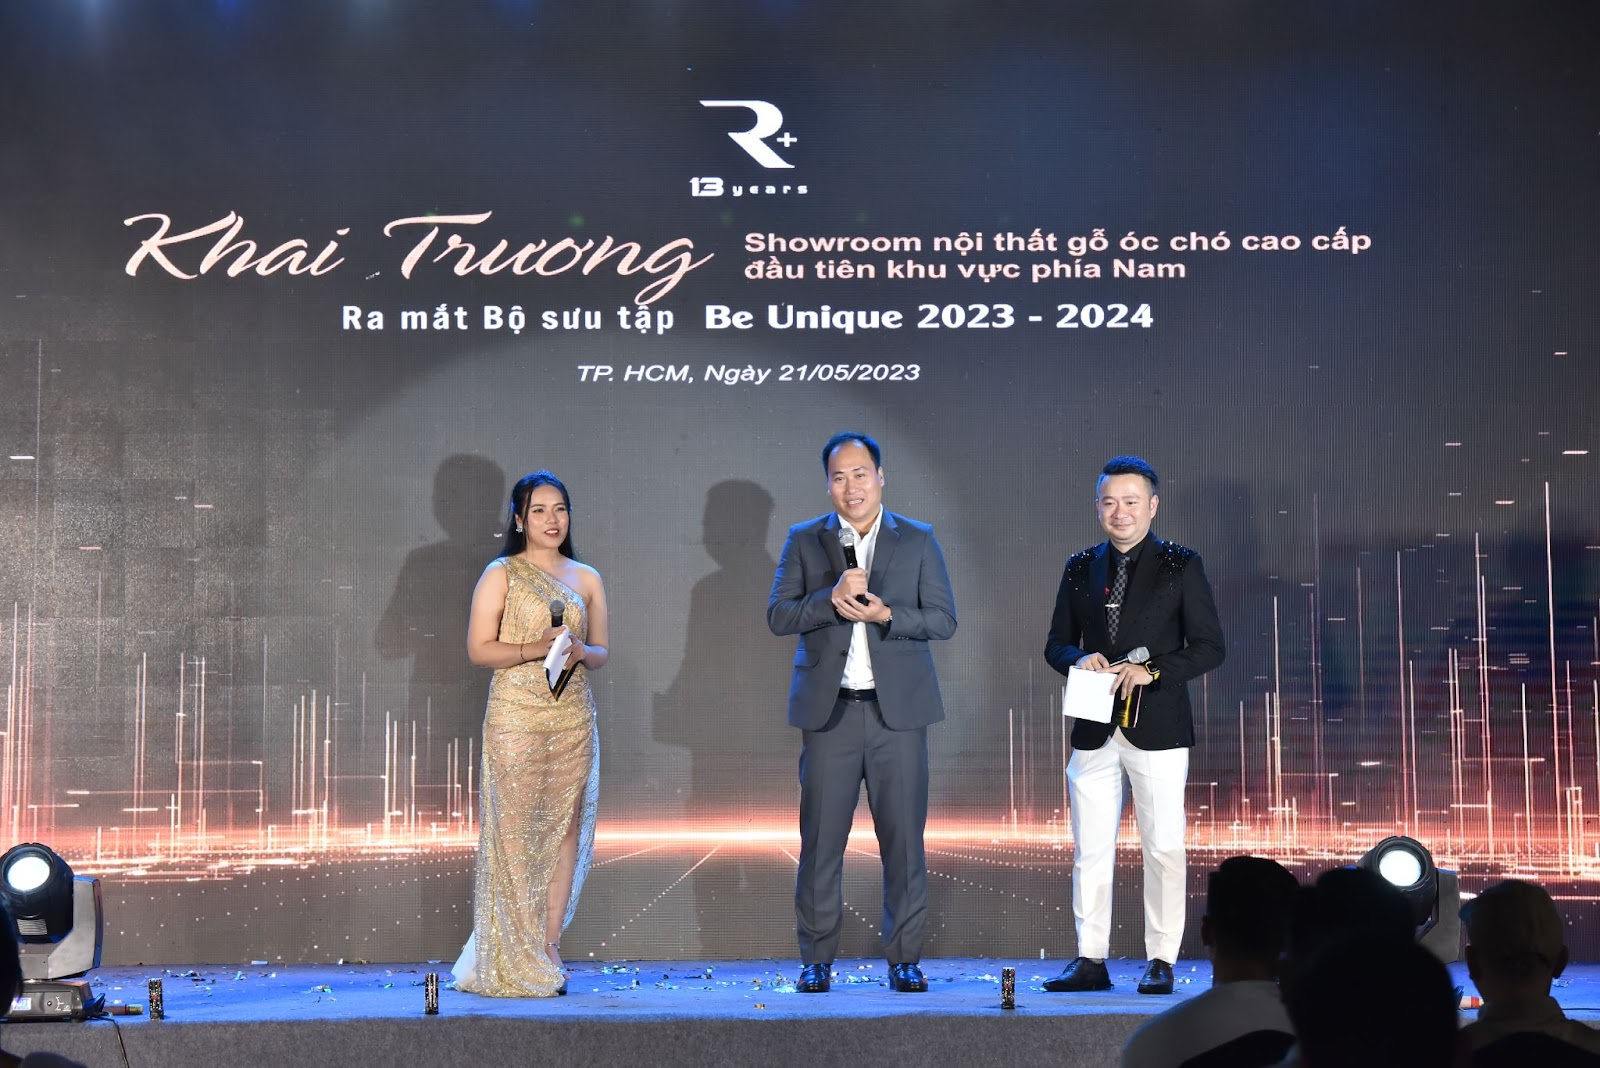 Phát biểu tại buổi lễ, Kiến trúc sư Hoàng Tiến Quỳnh- Tổng giám đốc R+ cảm ơn sự hiện diện của các chuyên gia và vị khách quý!